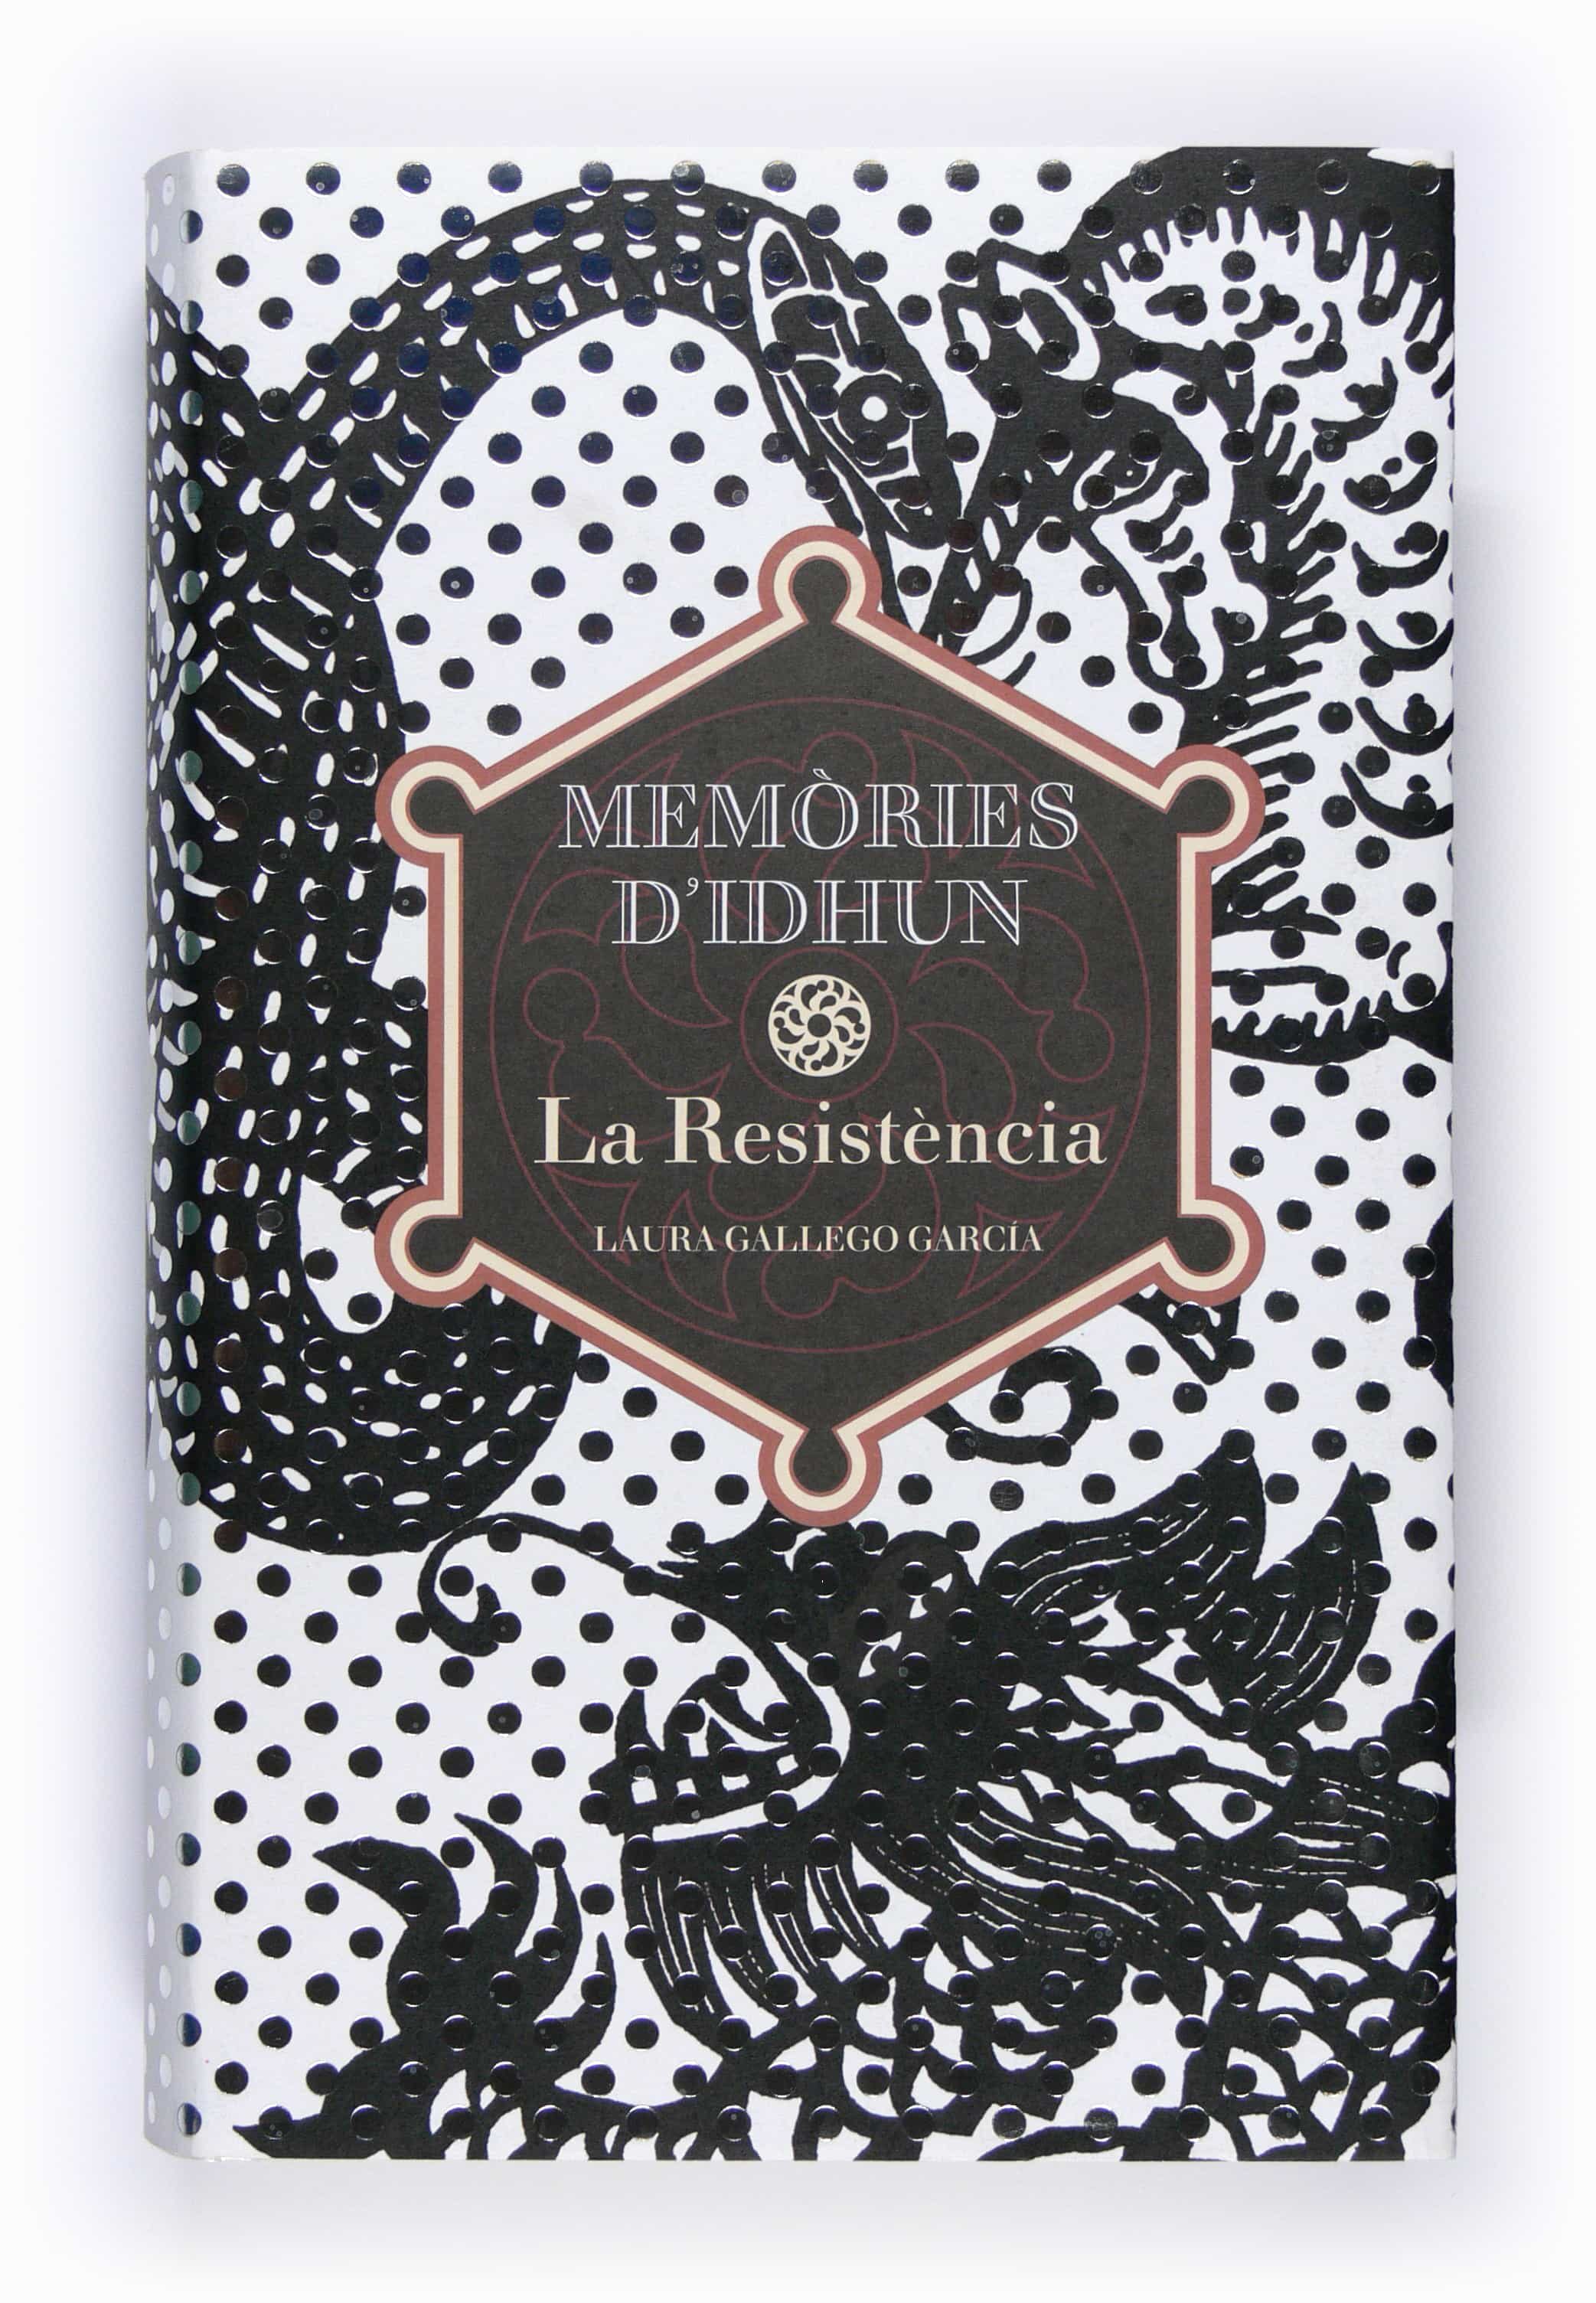 La resistencia by Laura Gallego